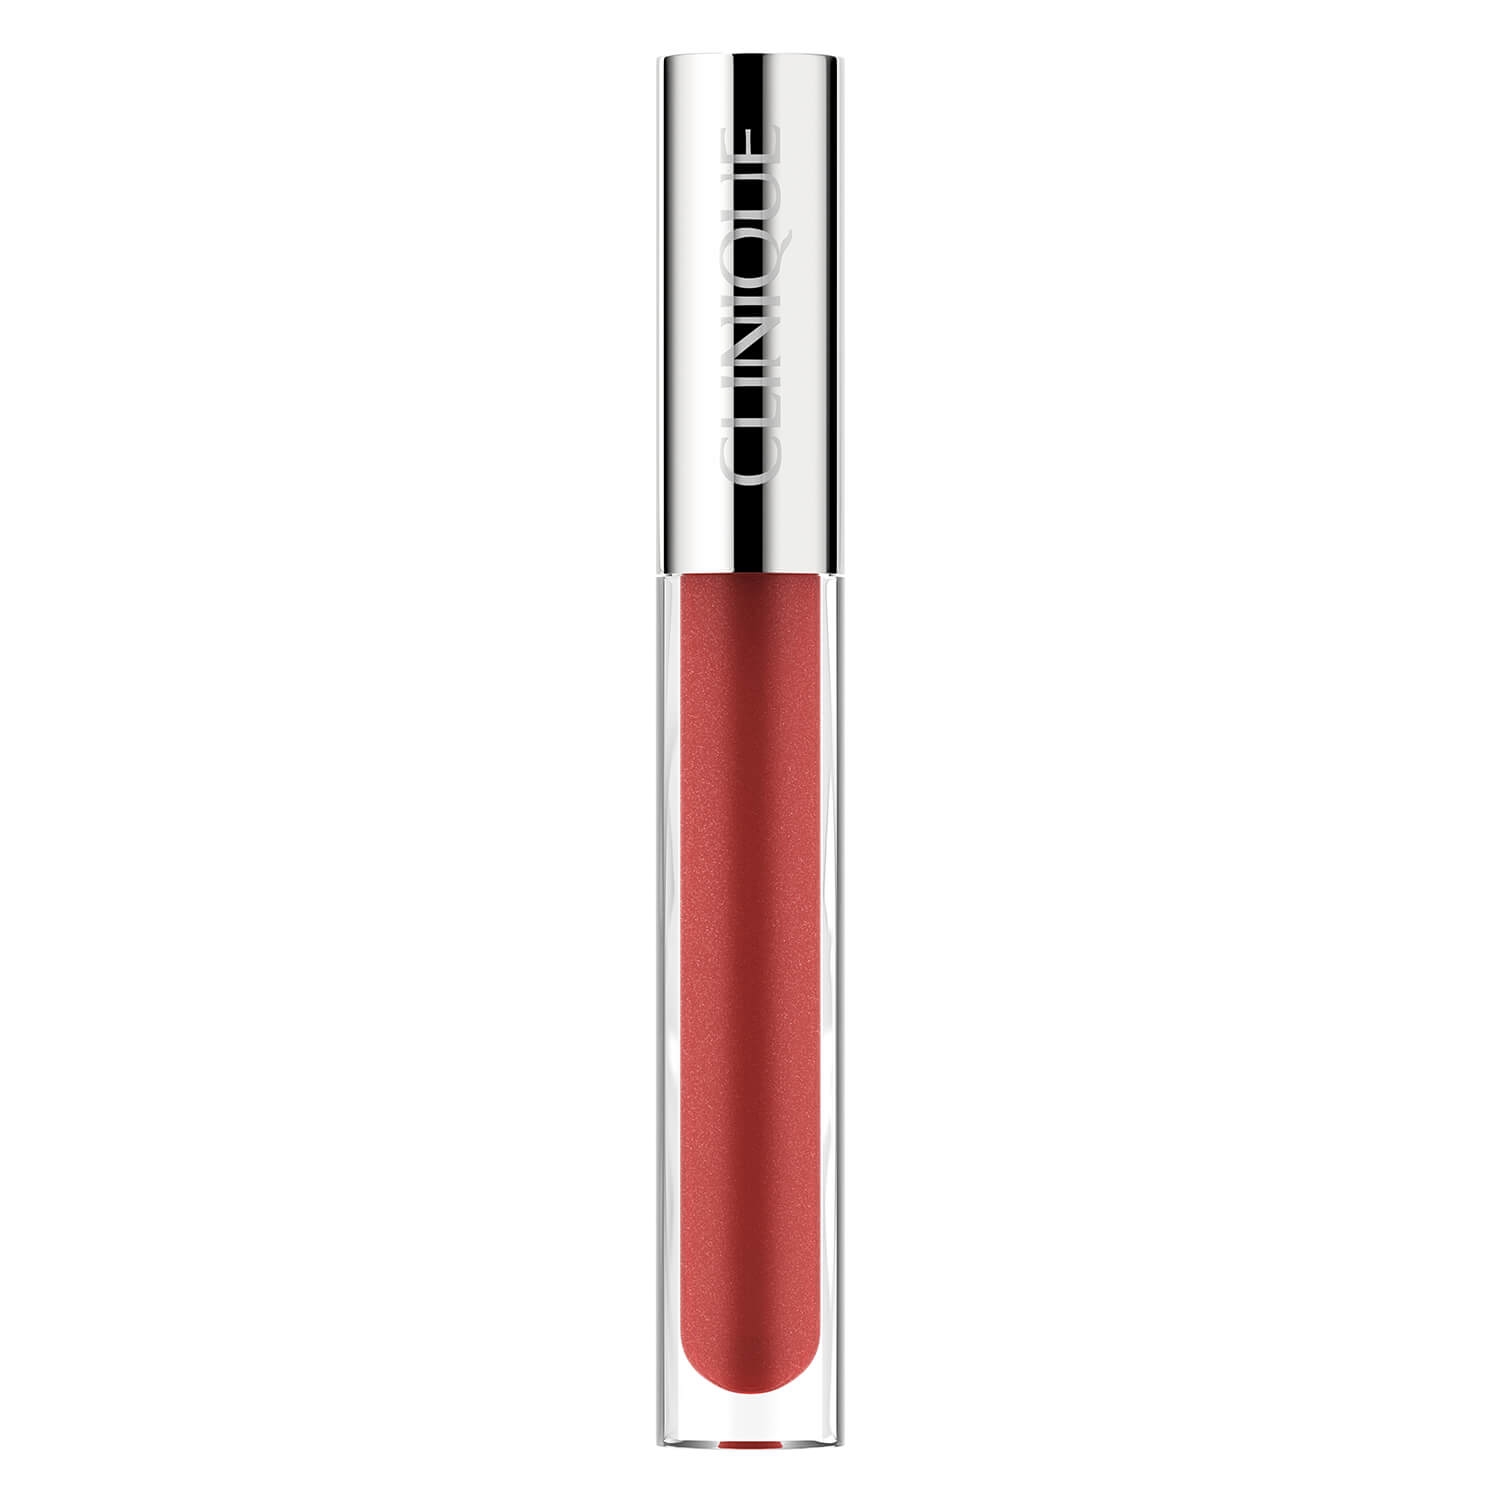 Produktbild von Clinique Lips - Pop Plush Creamy Lip Gloss 03 Brulee Pop